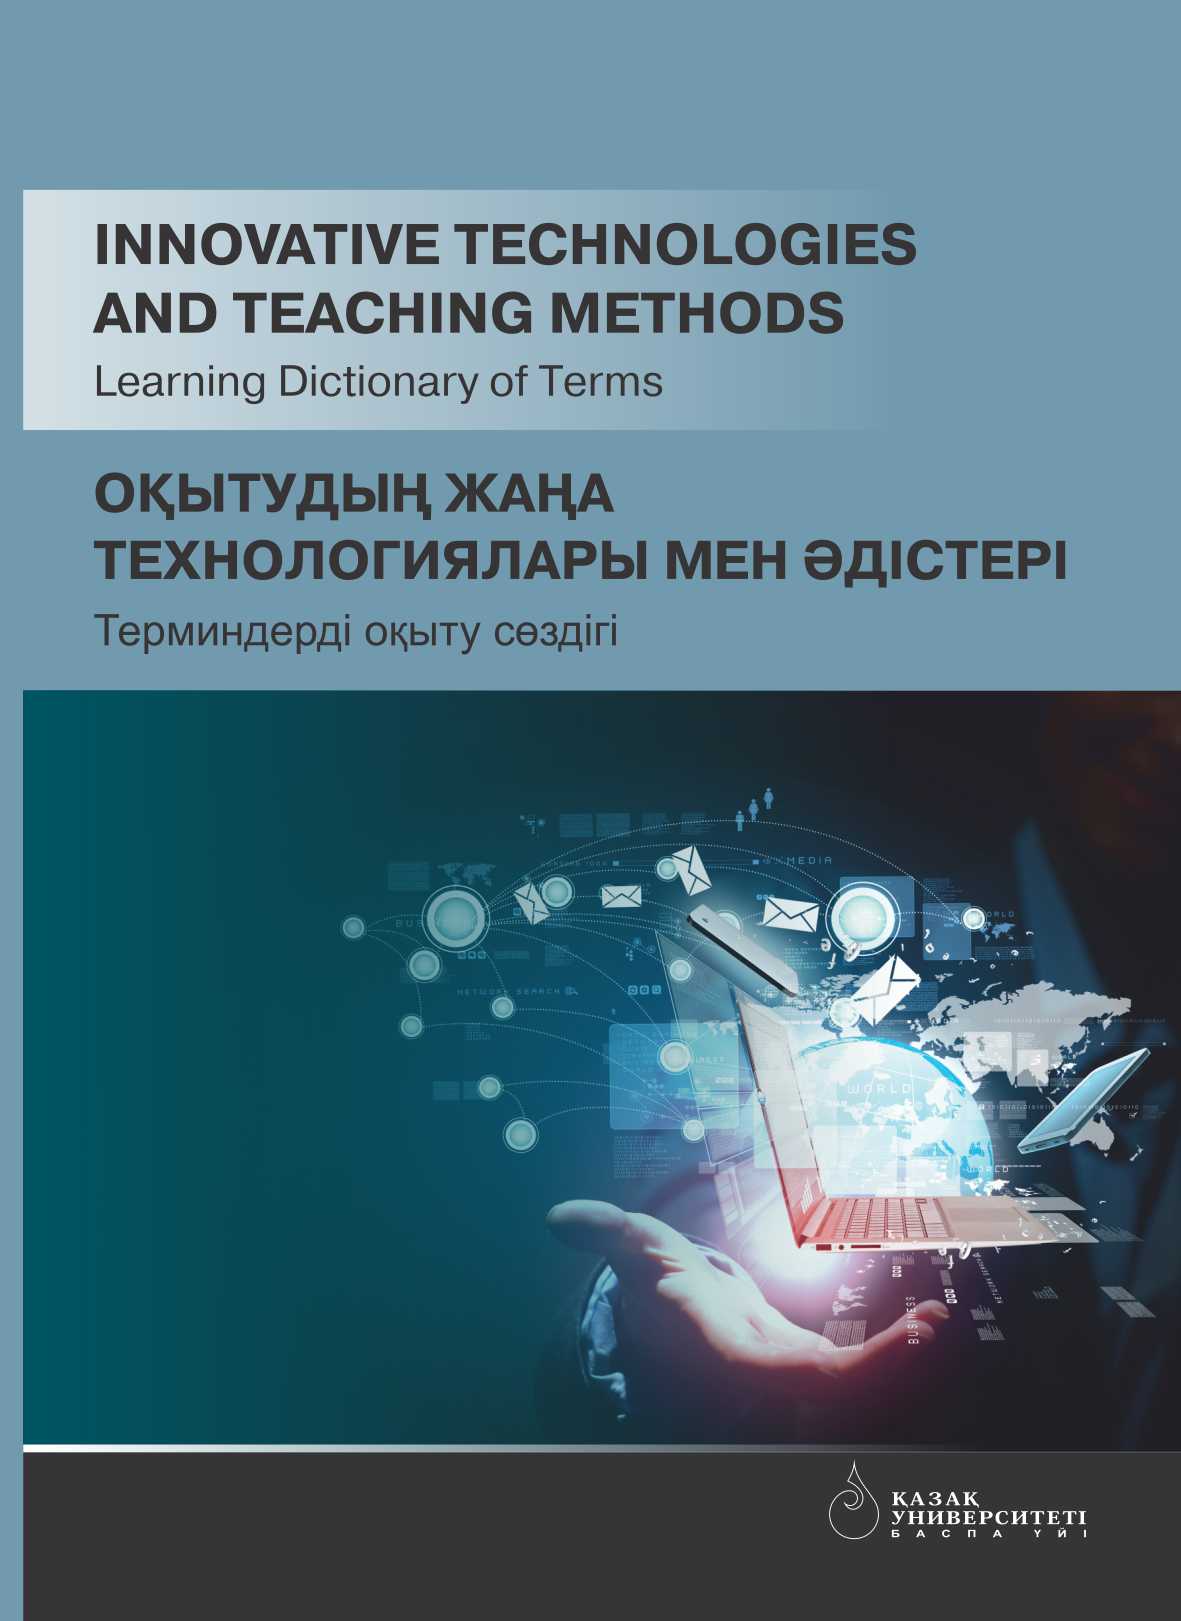 Innovative technologies and teaching methods: Learning Dictionary of Terms = Оқытудың жаңа технологиялары мен әдістері: Терминдерді оқыту сөздігі – 106 p.